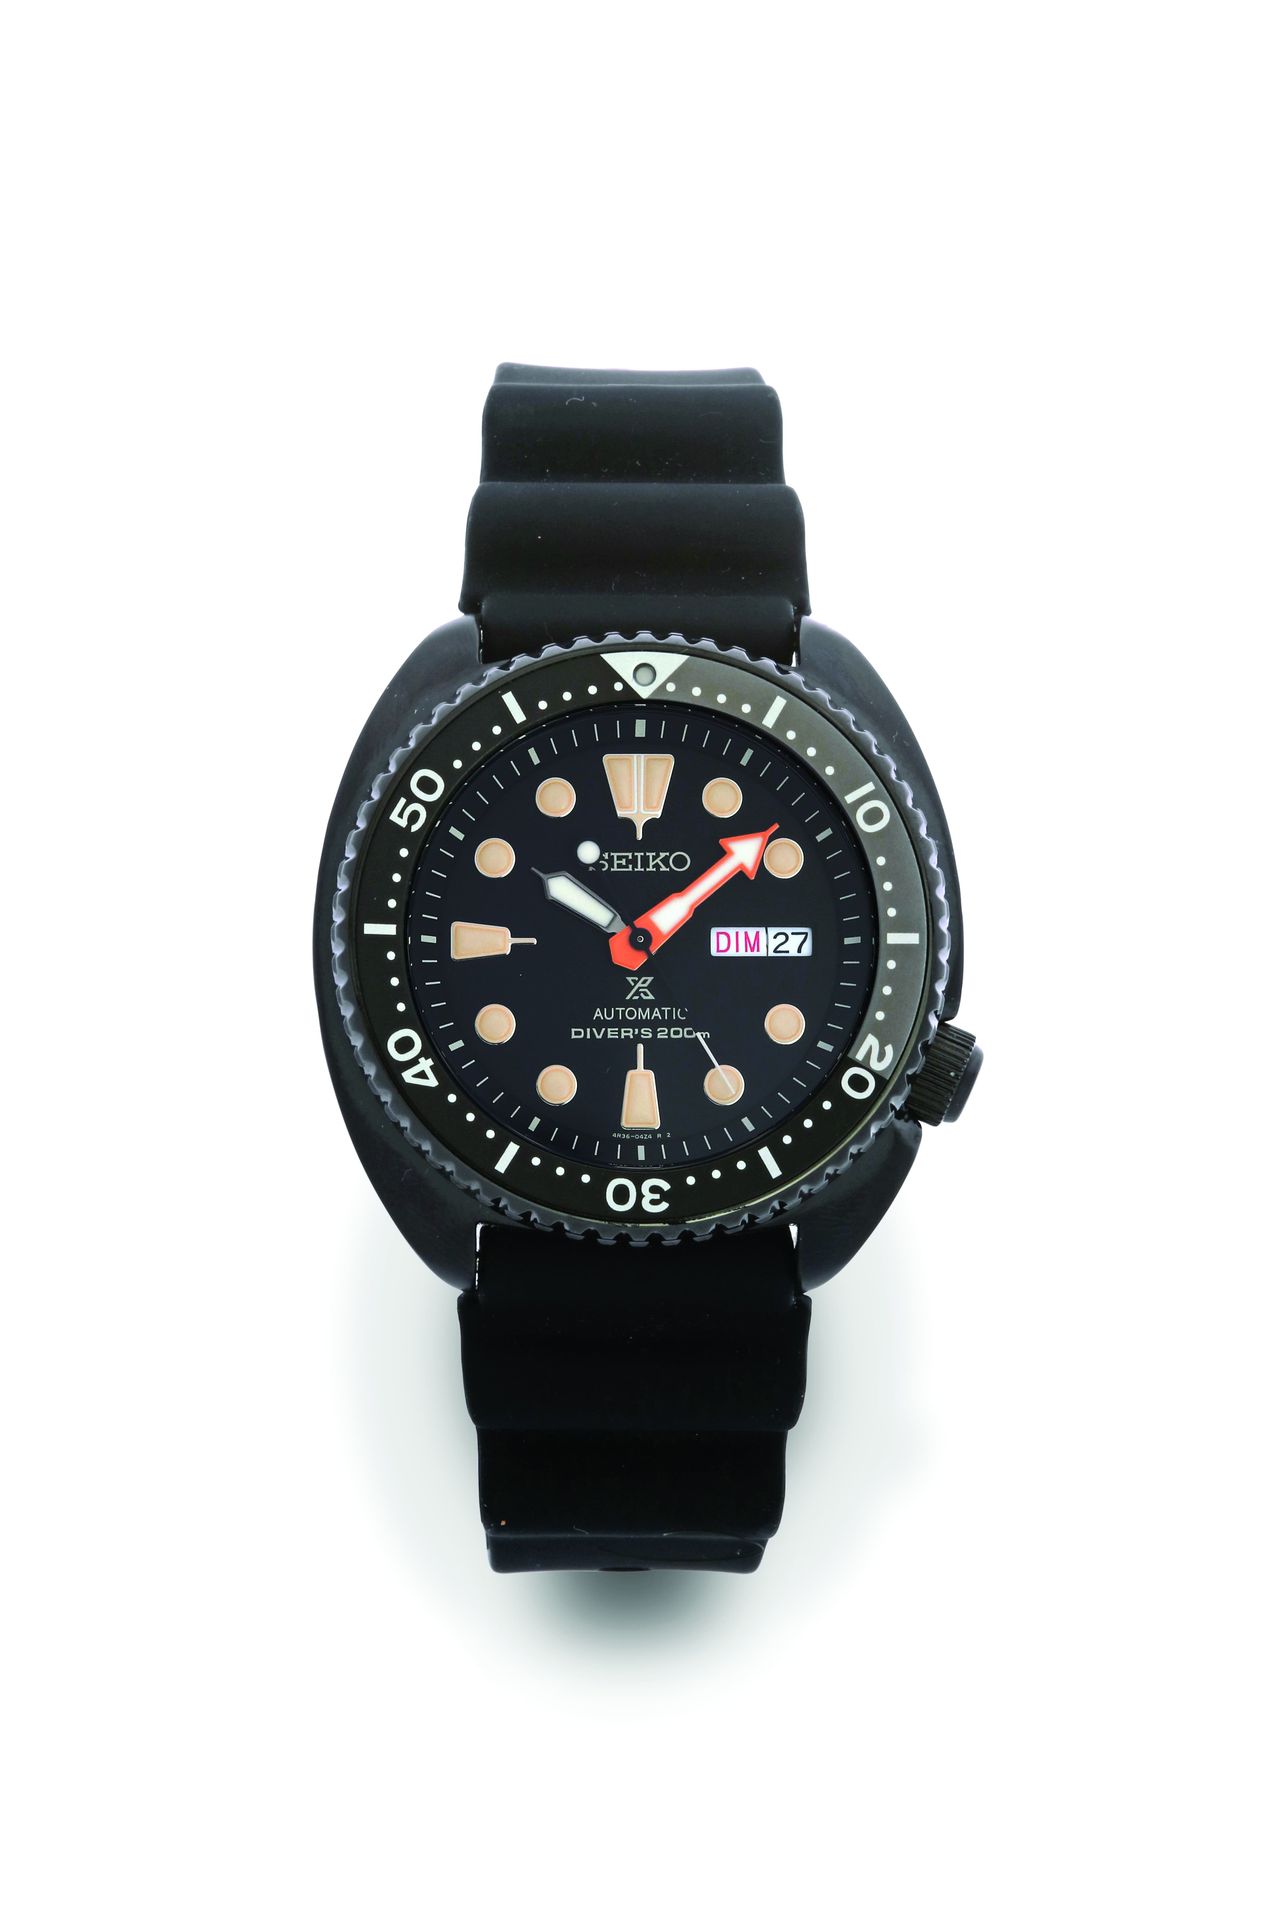 SEIKO Diver's 200 m Edición Limitada
Referencia 4R36 - 06L0
Reloj de submarinism&hellip;